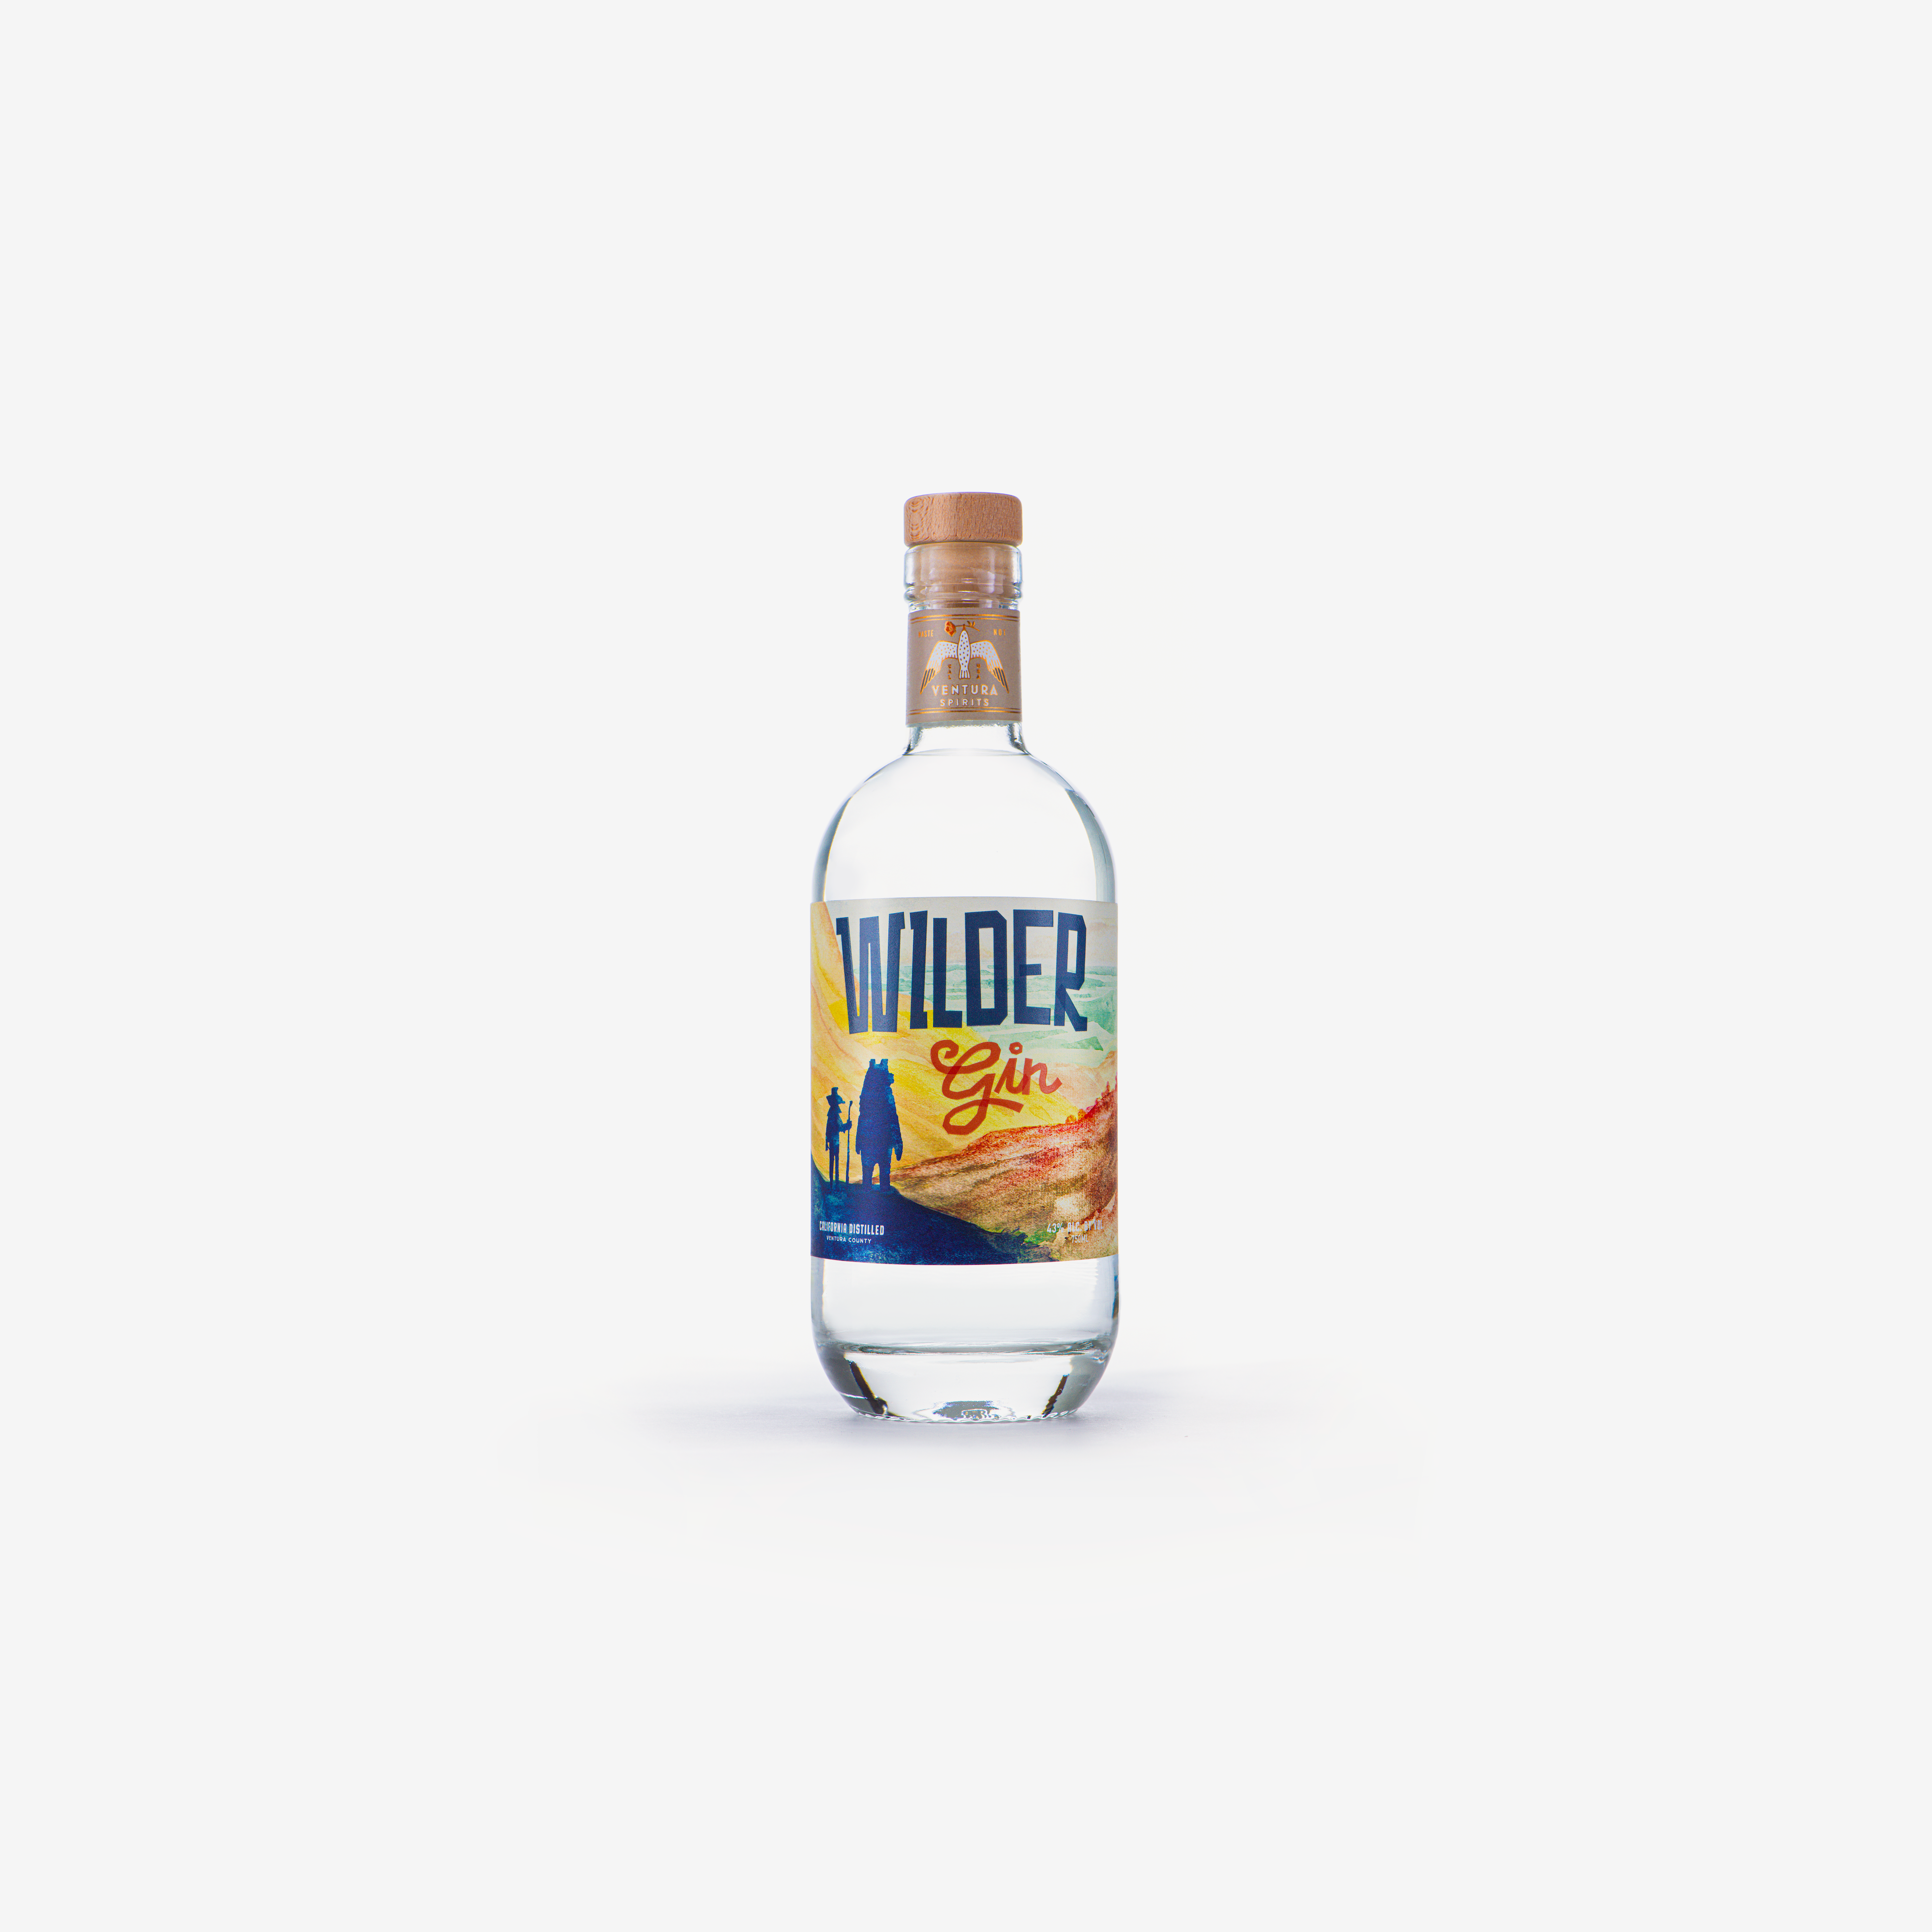 Wilder Gin